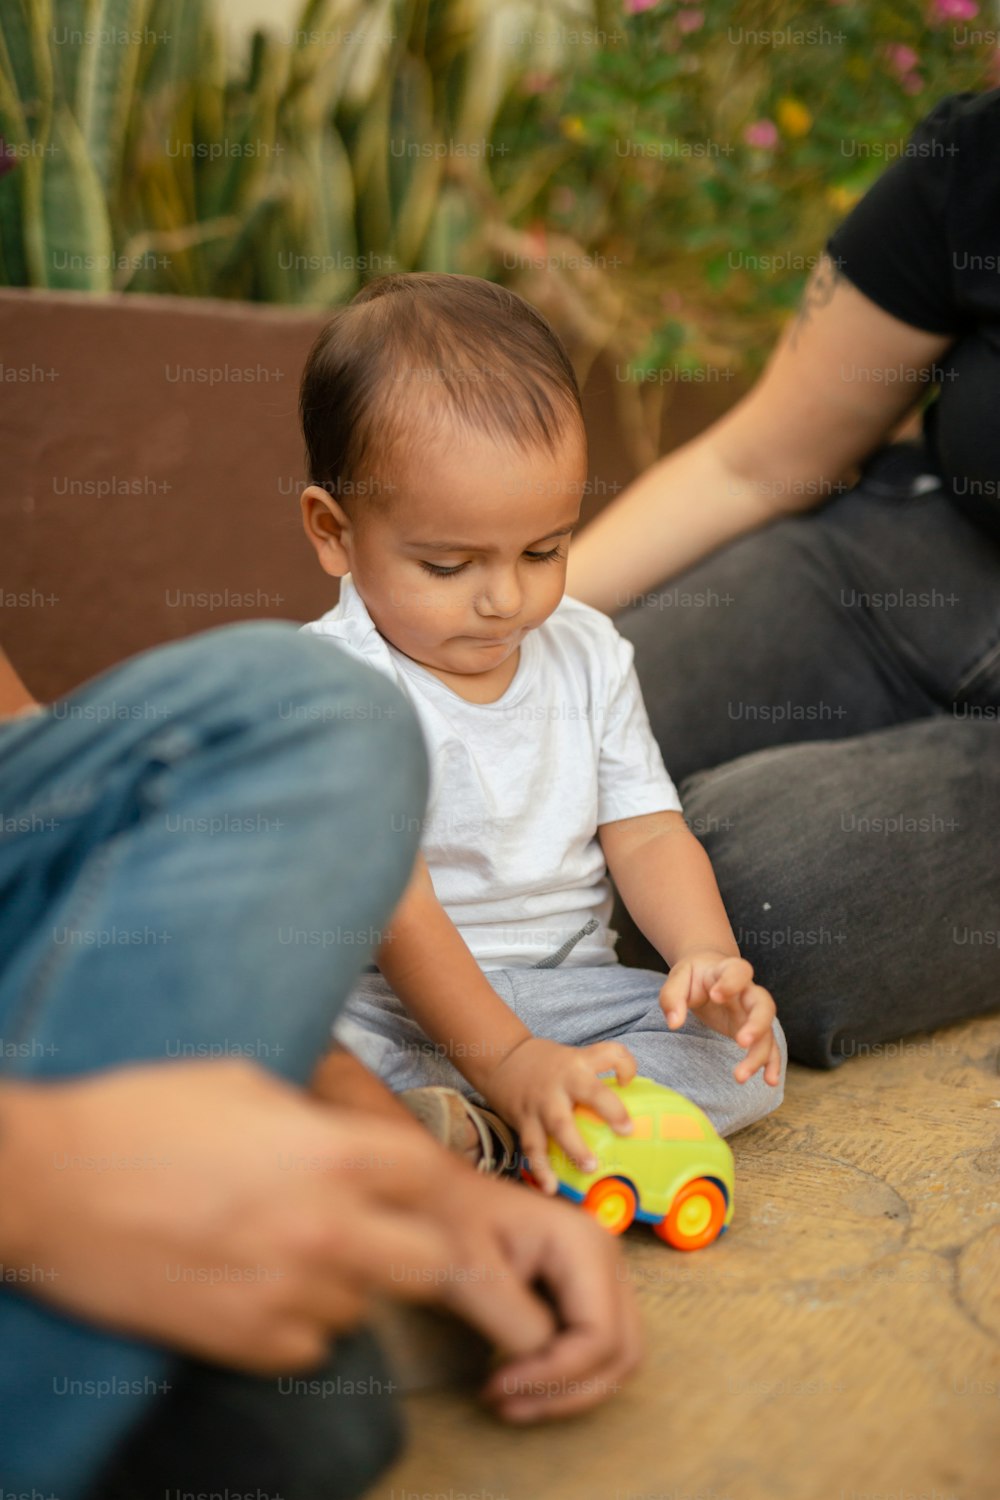 Un bebé sentado en el suelo jugando con un juguete